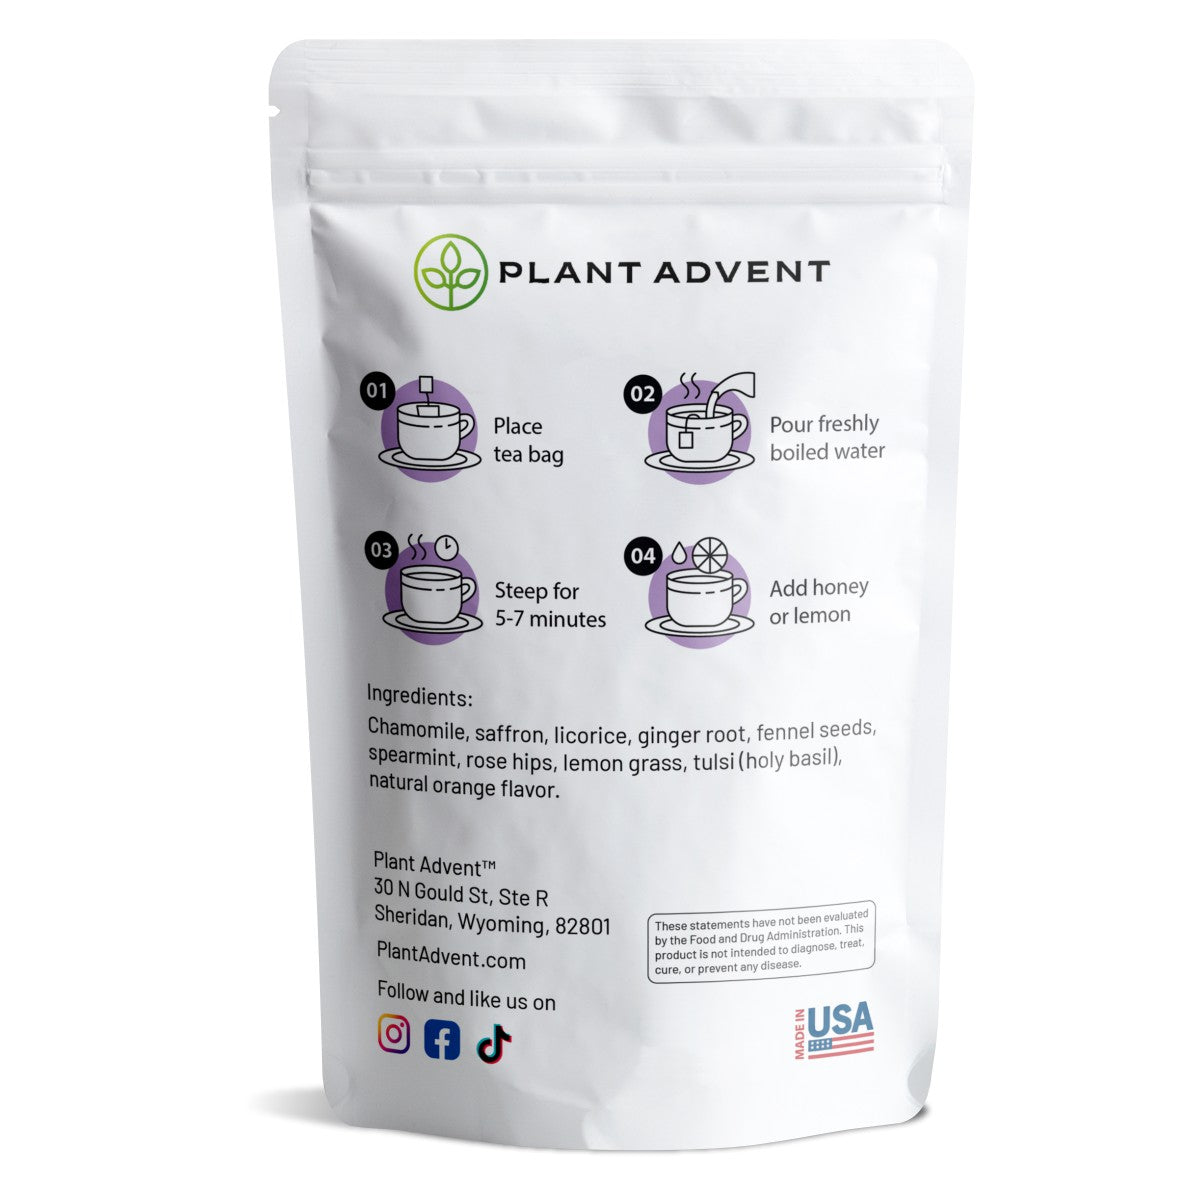 Plant Advent Premium Goodnight Sleep Tea